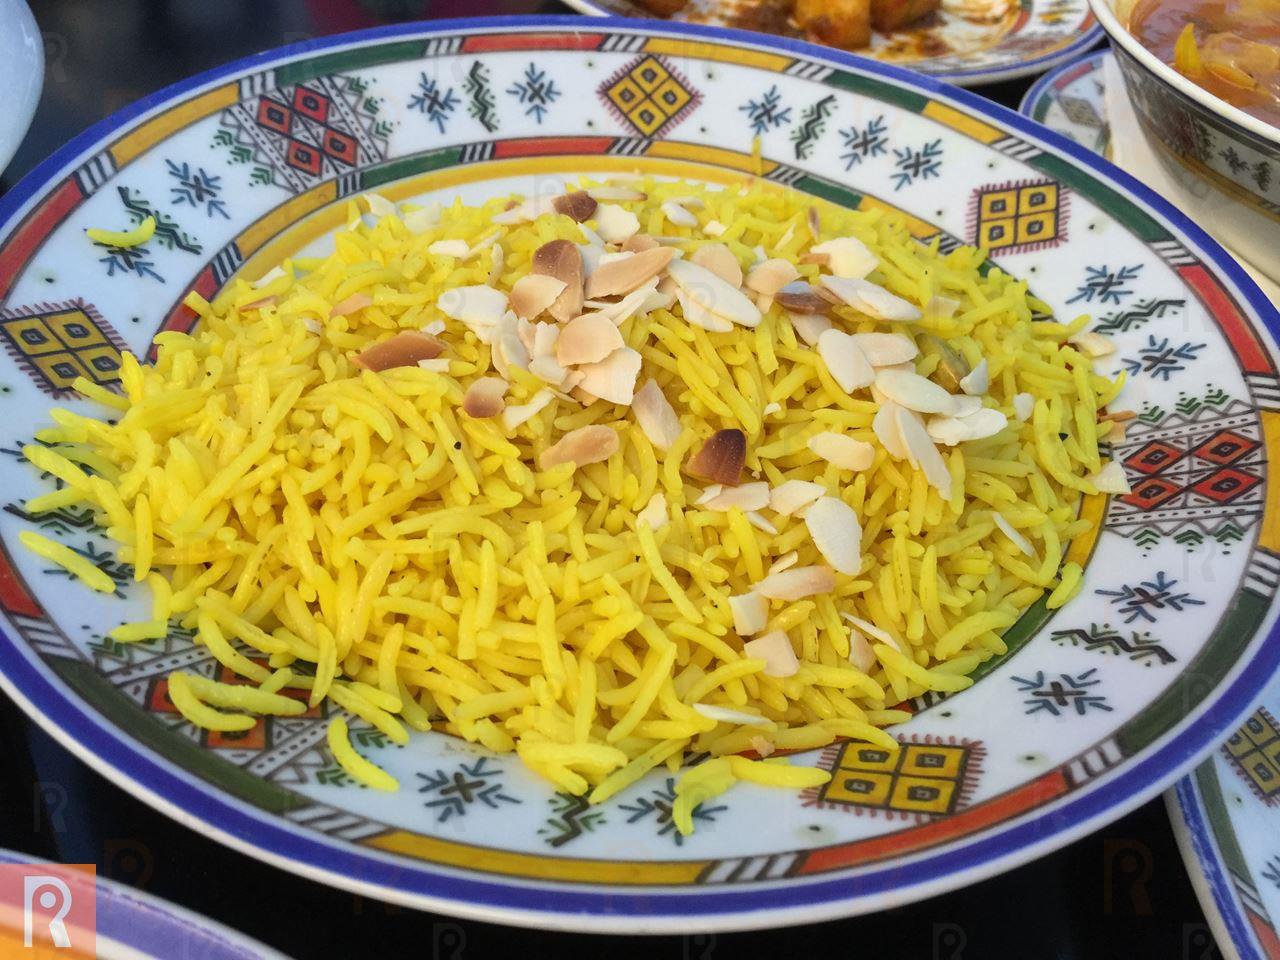 غداء مغربي مميز في مطعم الدار